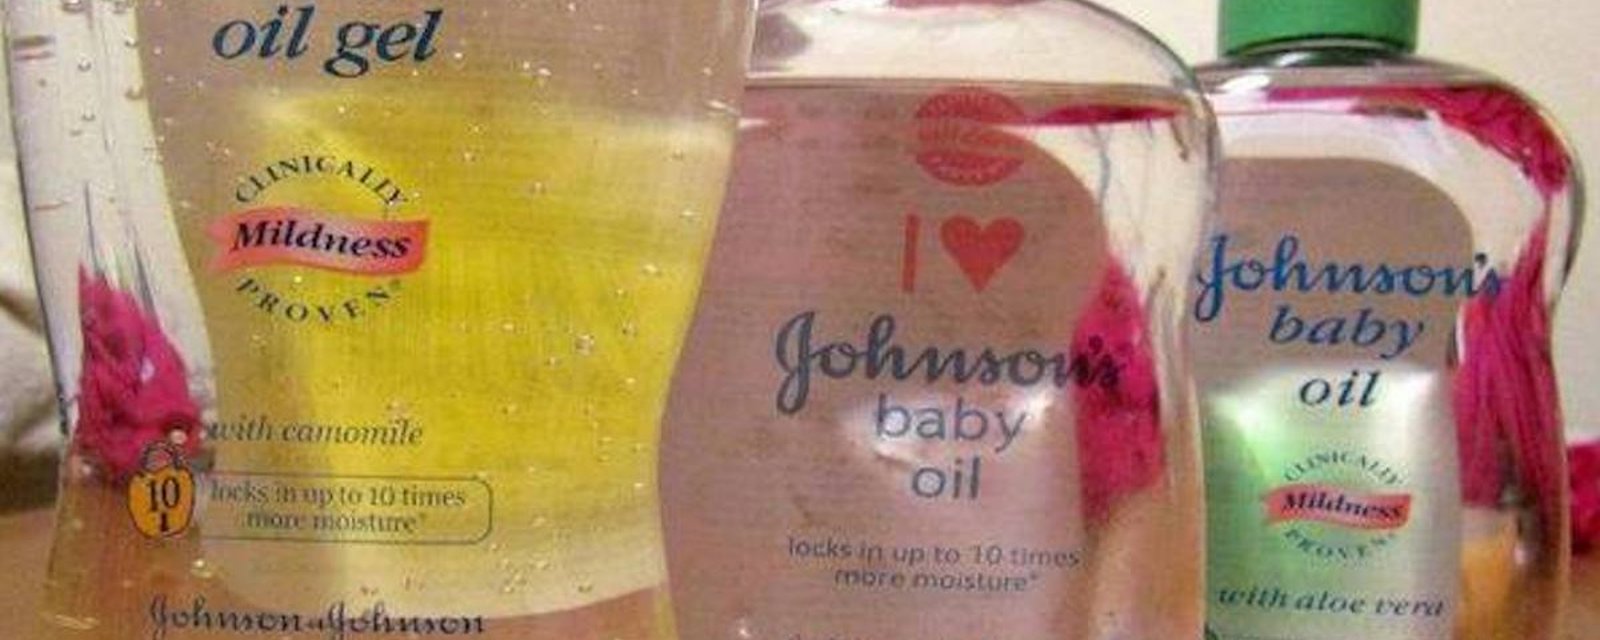 11 utilisations inusitées de l'huile pour bébé